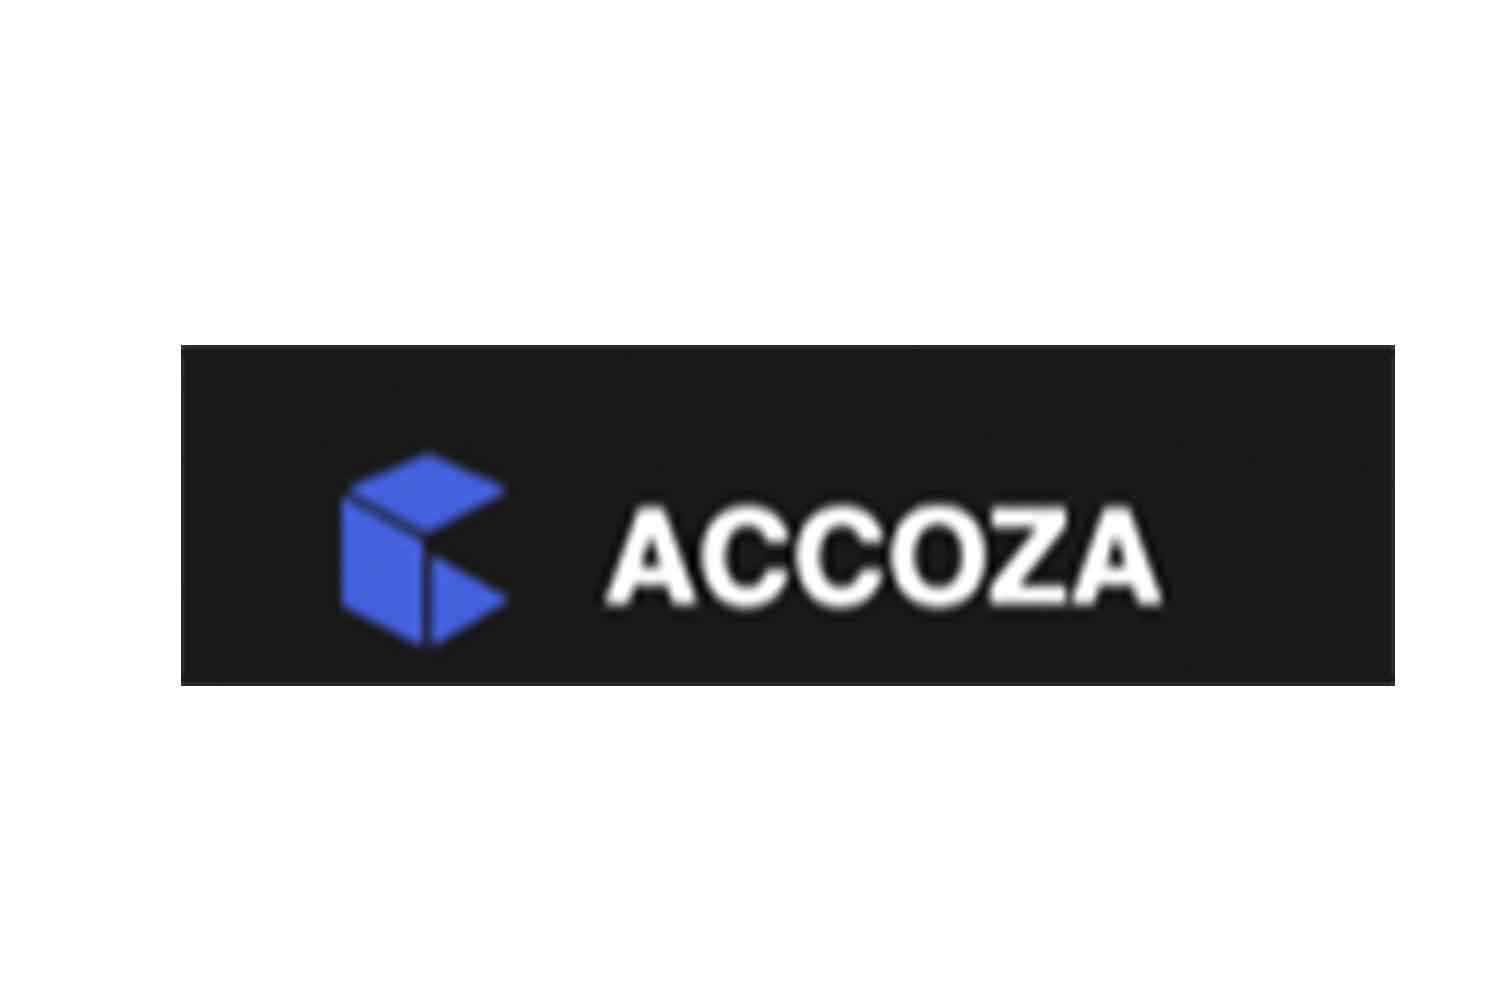 Отзывы об Accoza: реальная биржа или обман?